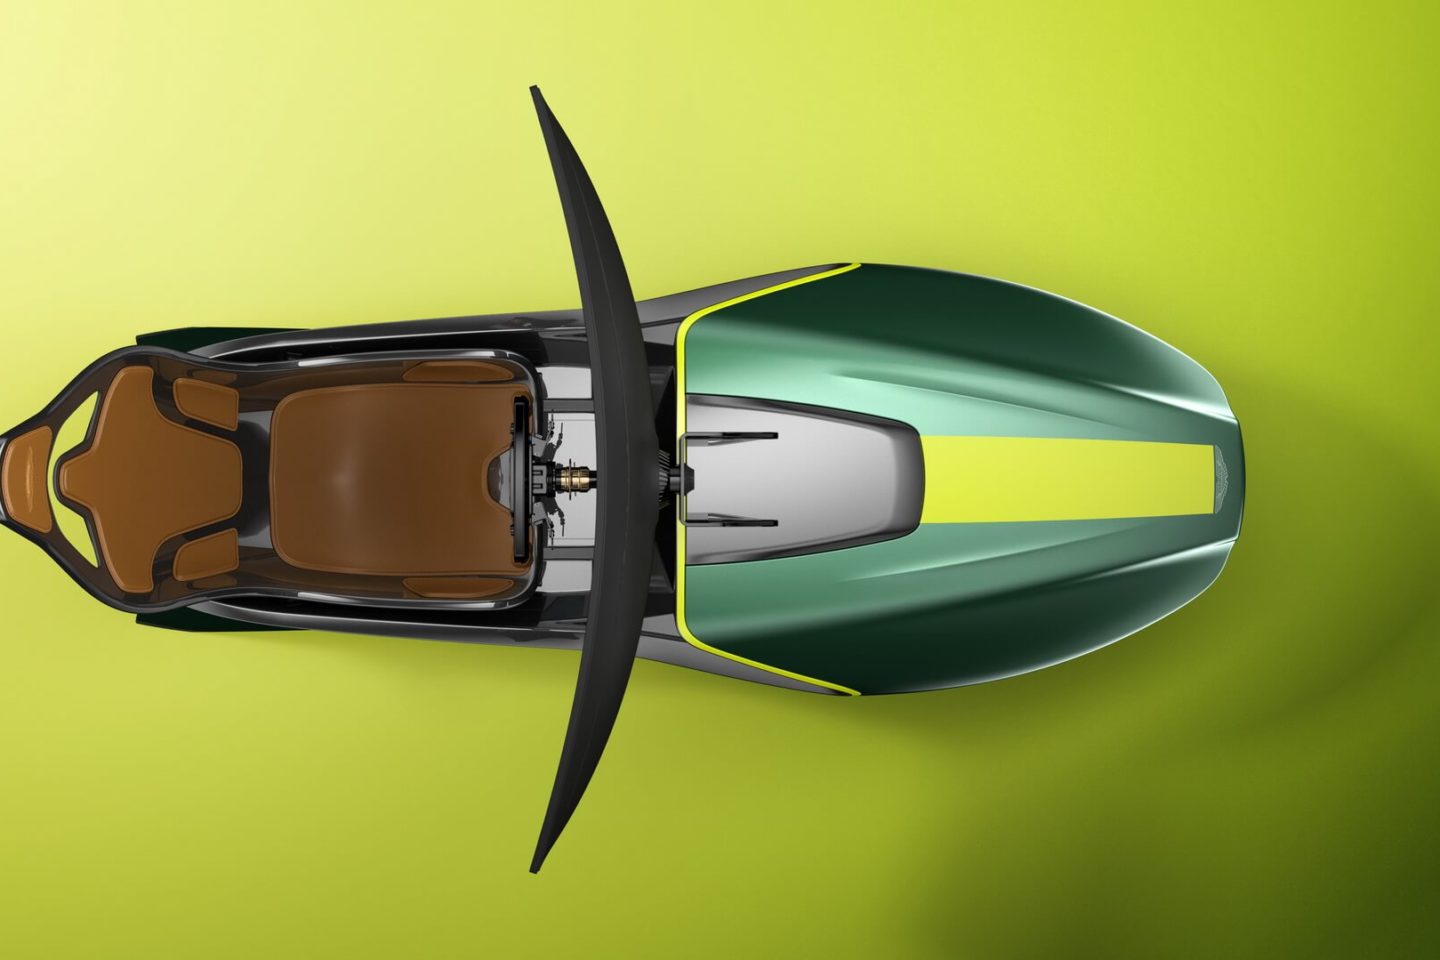 Simulador Aston Martin